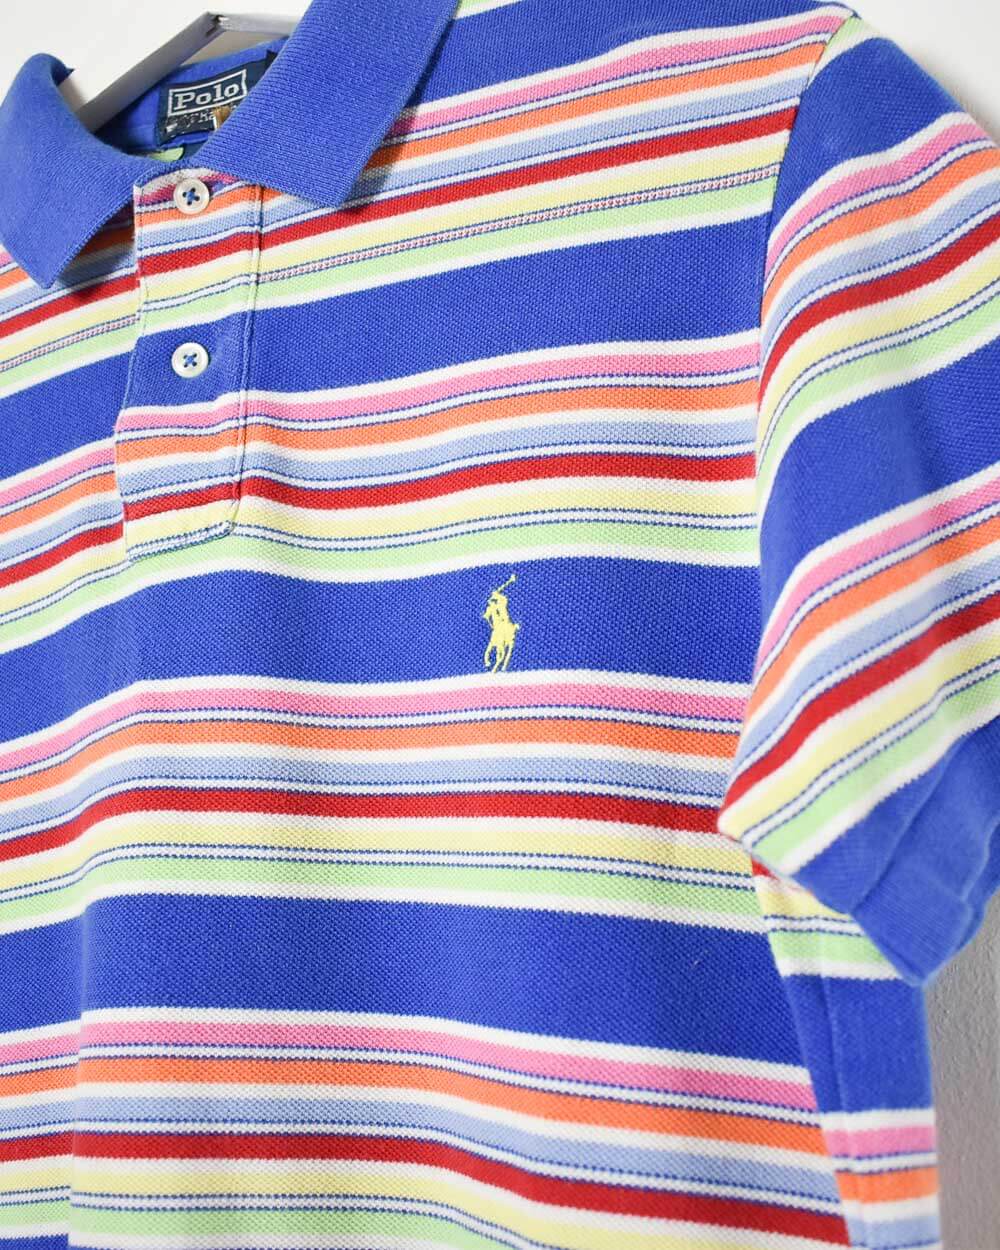 Blue Ralph Lauren Polo Shirt - Medium